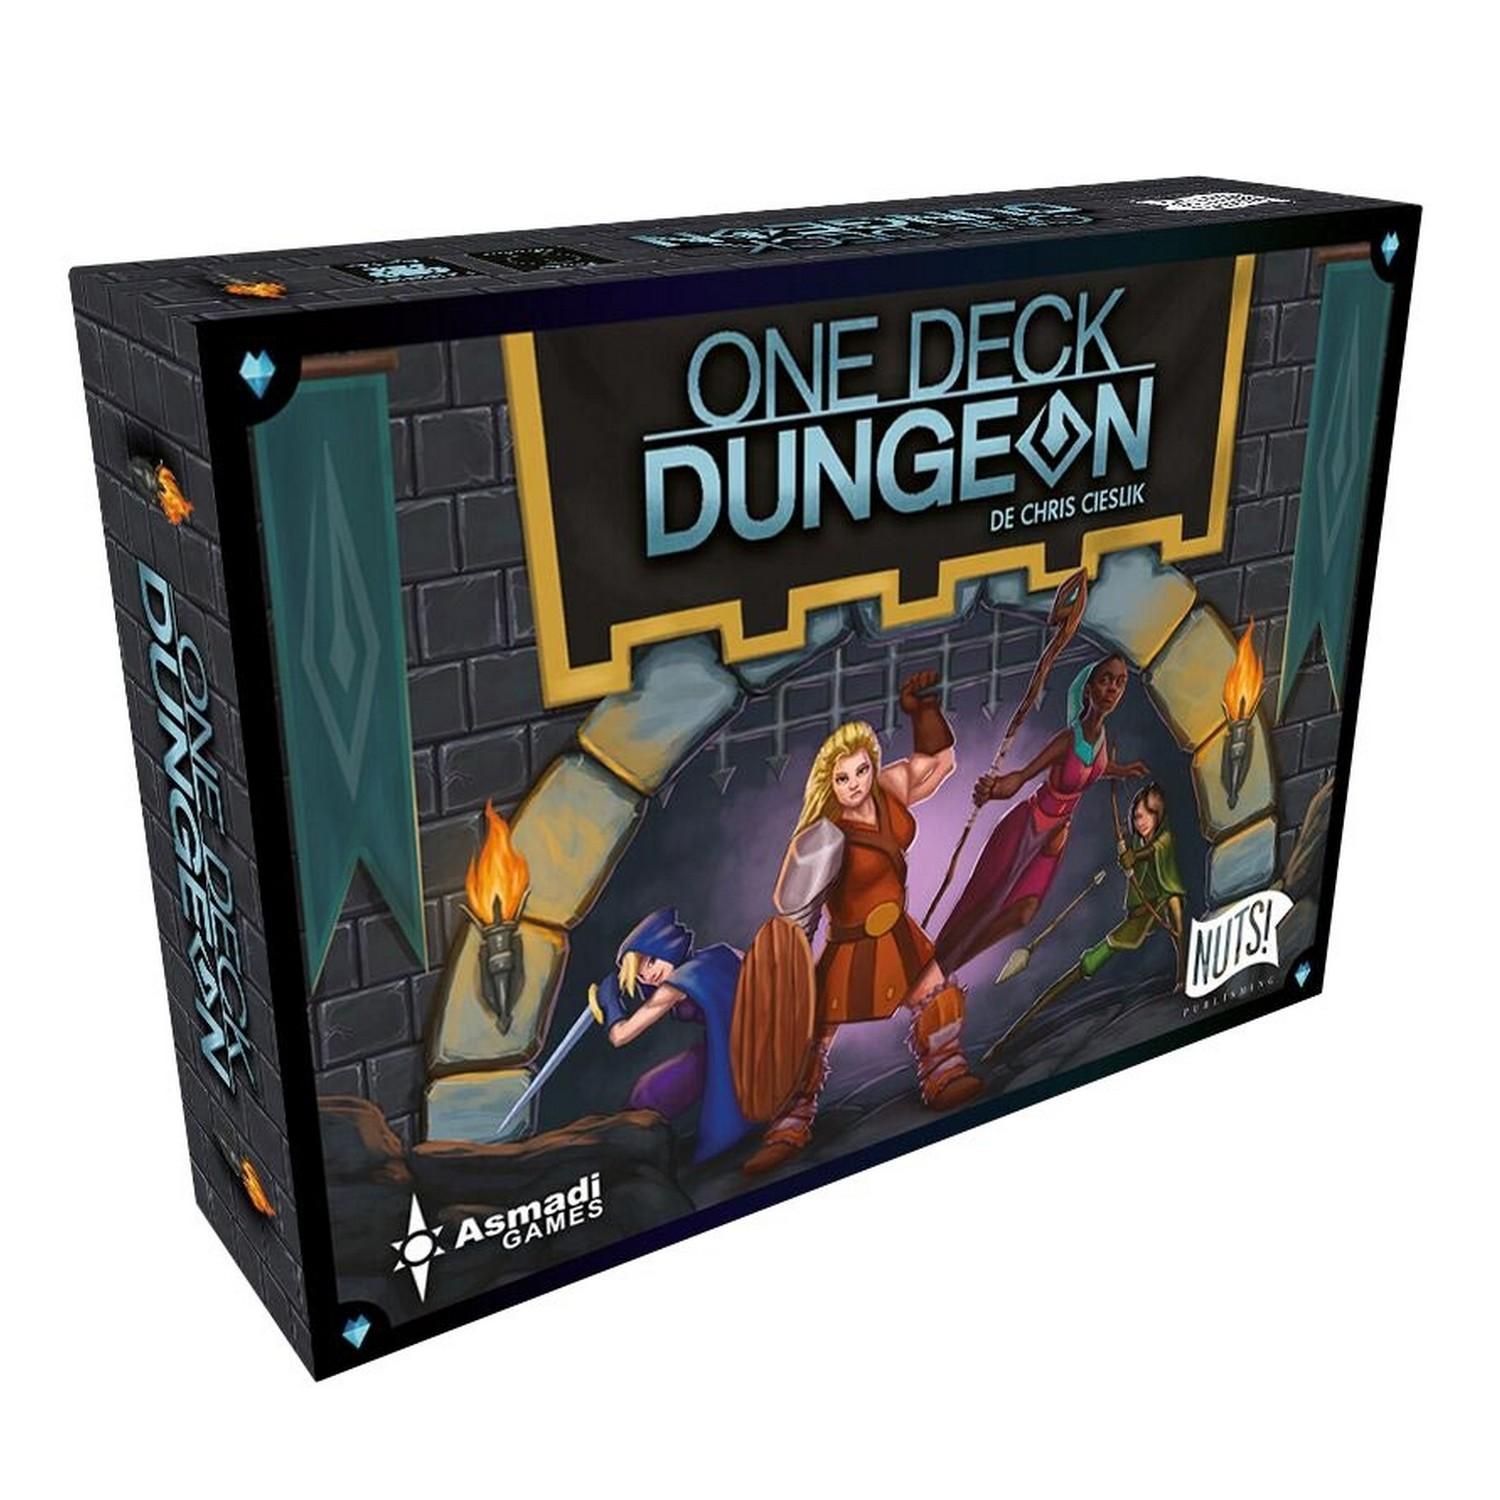 One deck dungeon